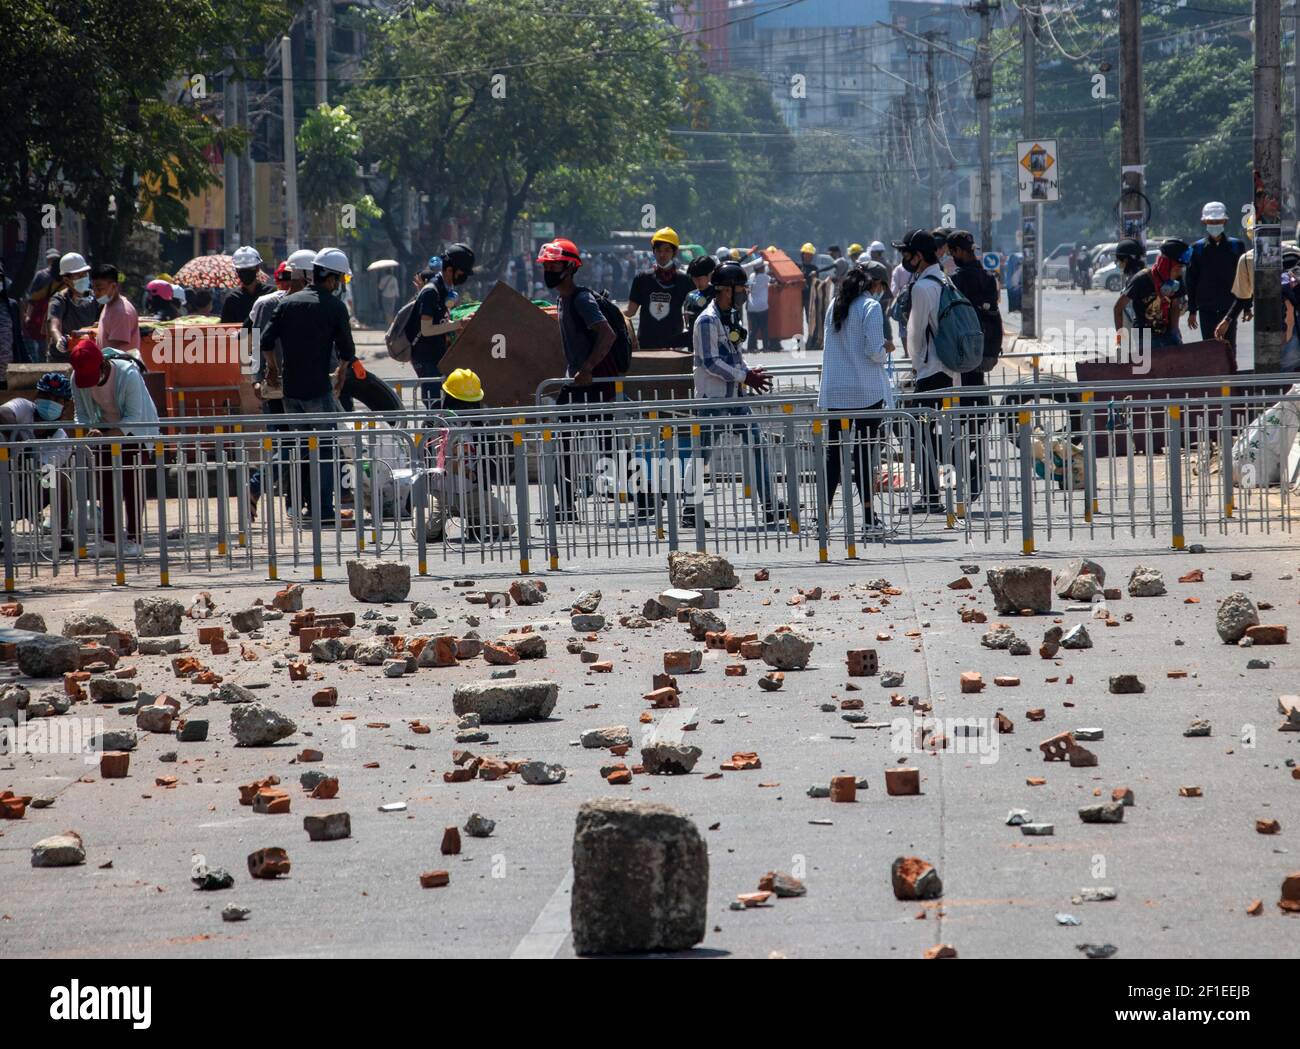 I manifestanti anti anti di colpo di stato militare fanno una barricata improvvisata e gettano pietre sulla strada per dare alla polizia un tempo difficile per raggiungerli durante una dimostrazione contro il colpo di stato militare.la polizia di Myanmar ha attaccato i manifestanti con proiettili di gomma, munizioni vive, Lacrima di gas e bombe stordite in risposta ai manifestanti anti anti anti-colpo di stato militare lunedì. Due manifestanti sono stati uccisi a Myitkyina, nello Stato di Kachin dalle forze di sicurezza, da fonti locali. Un totale di 1758 persone sono state perseguitate, di cui 1440 ancora nelle prigioni militari del Myanmar e 60 sono state uccise dall'inizio delle proteste contro i mili Foto Stock